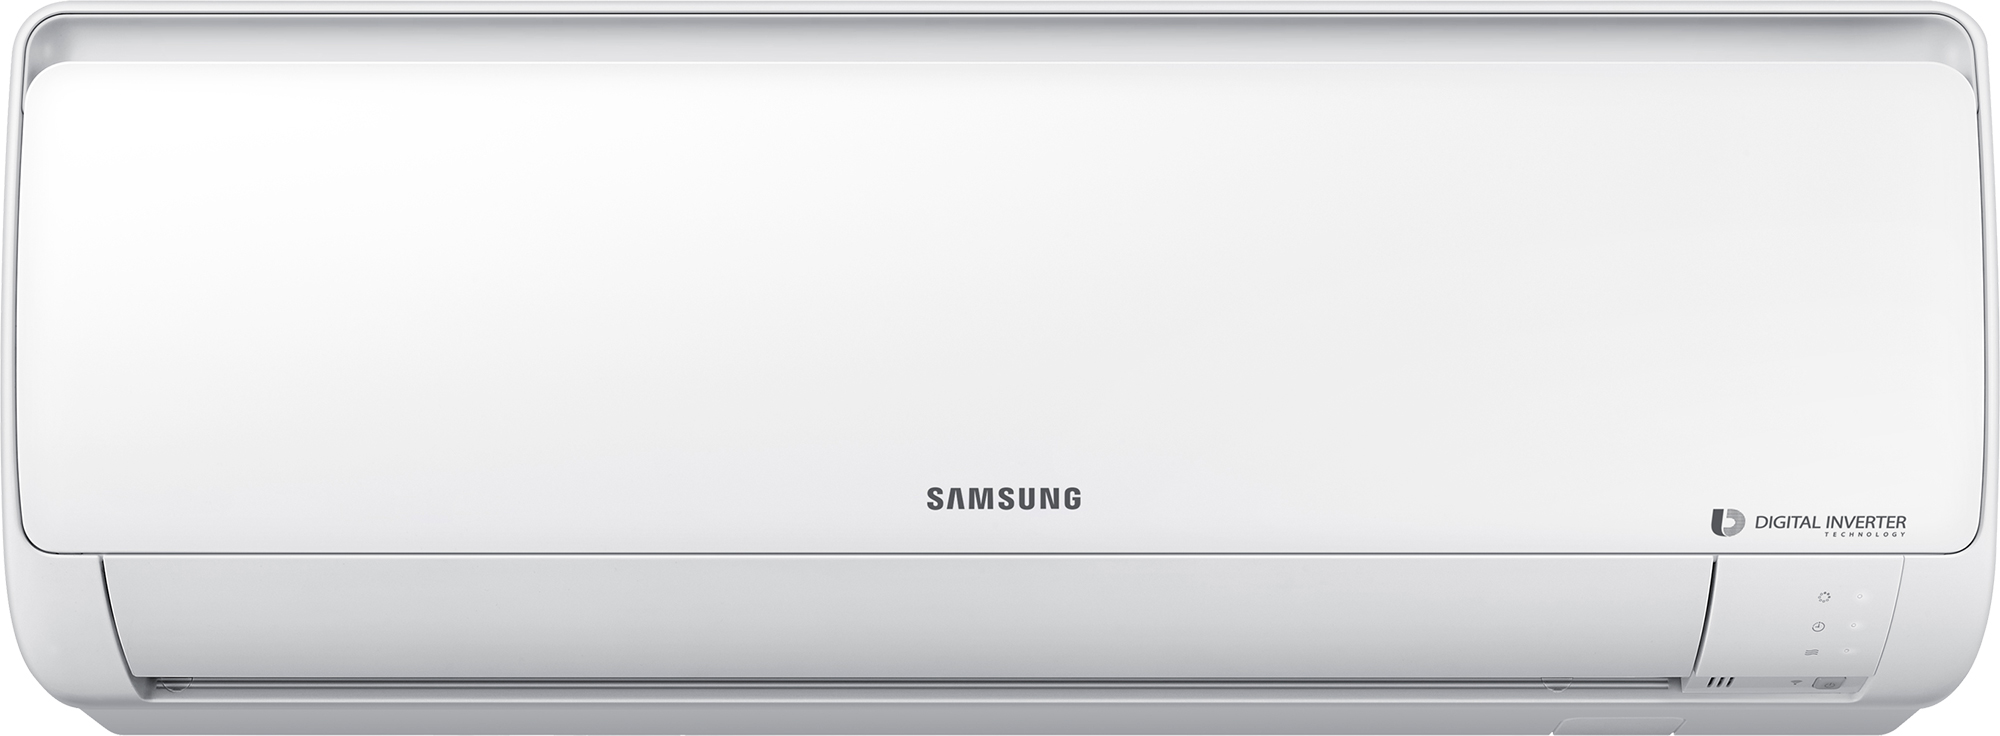 Кондиционер Samsung 18 тыс. BTU Samsung AR18RSFPAWQNER / AR18RSFPAWQXER